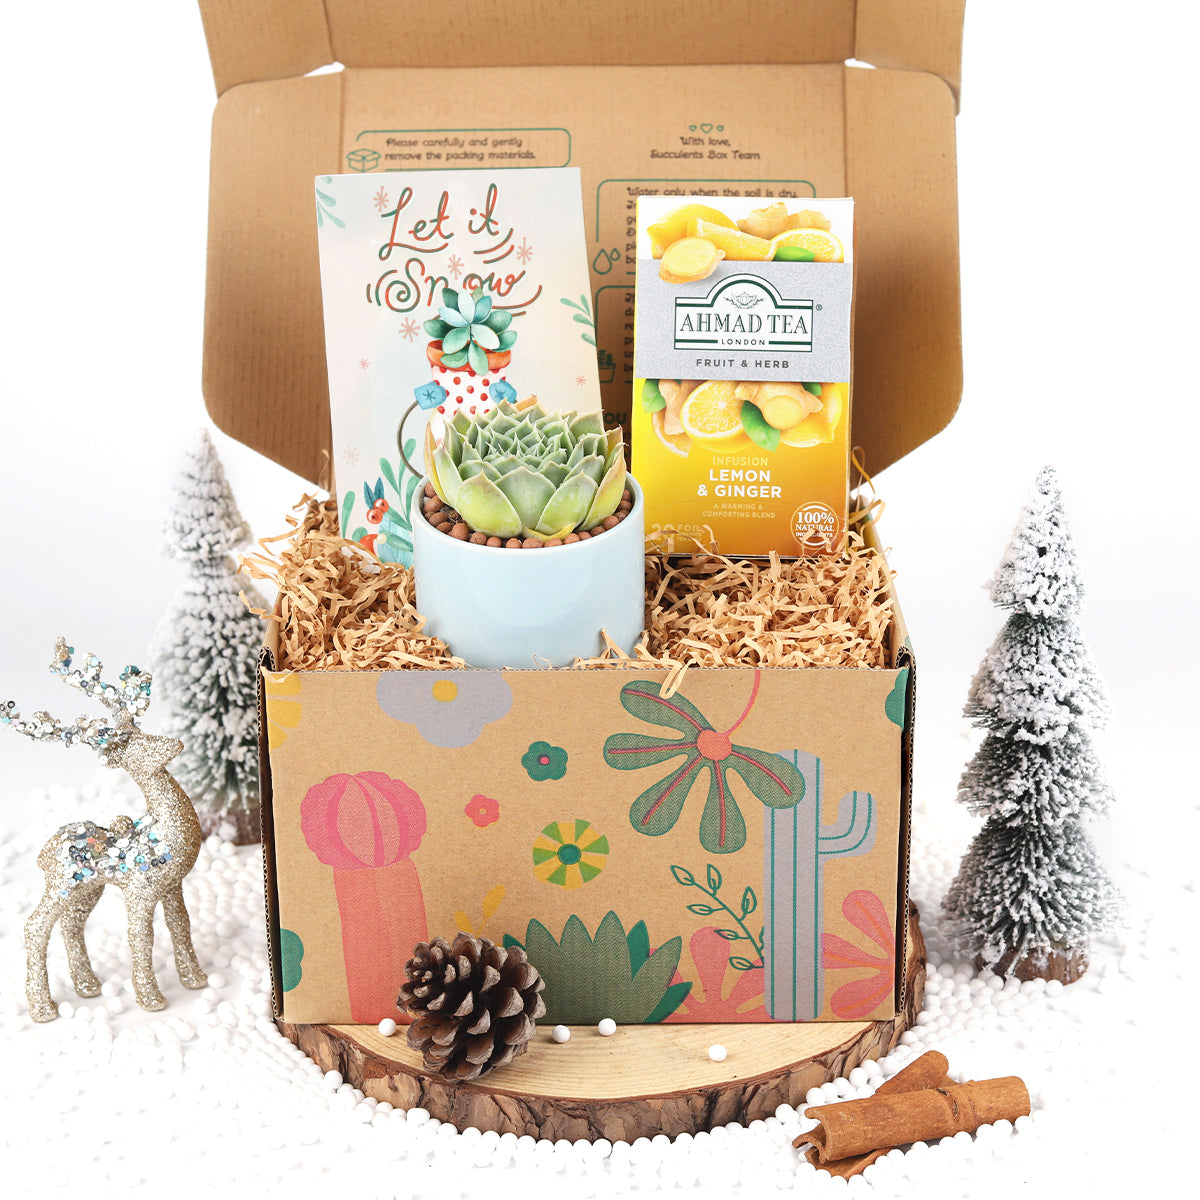 tea gift box, company gift box, gift box company, gift box companies, gift box for sale